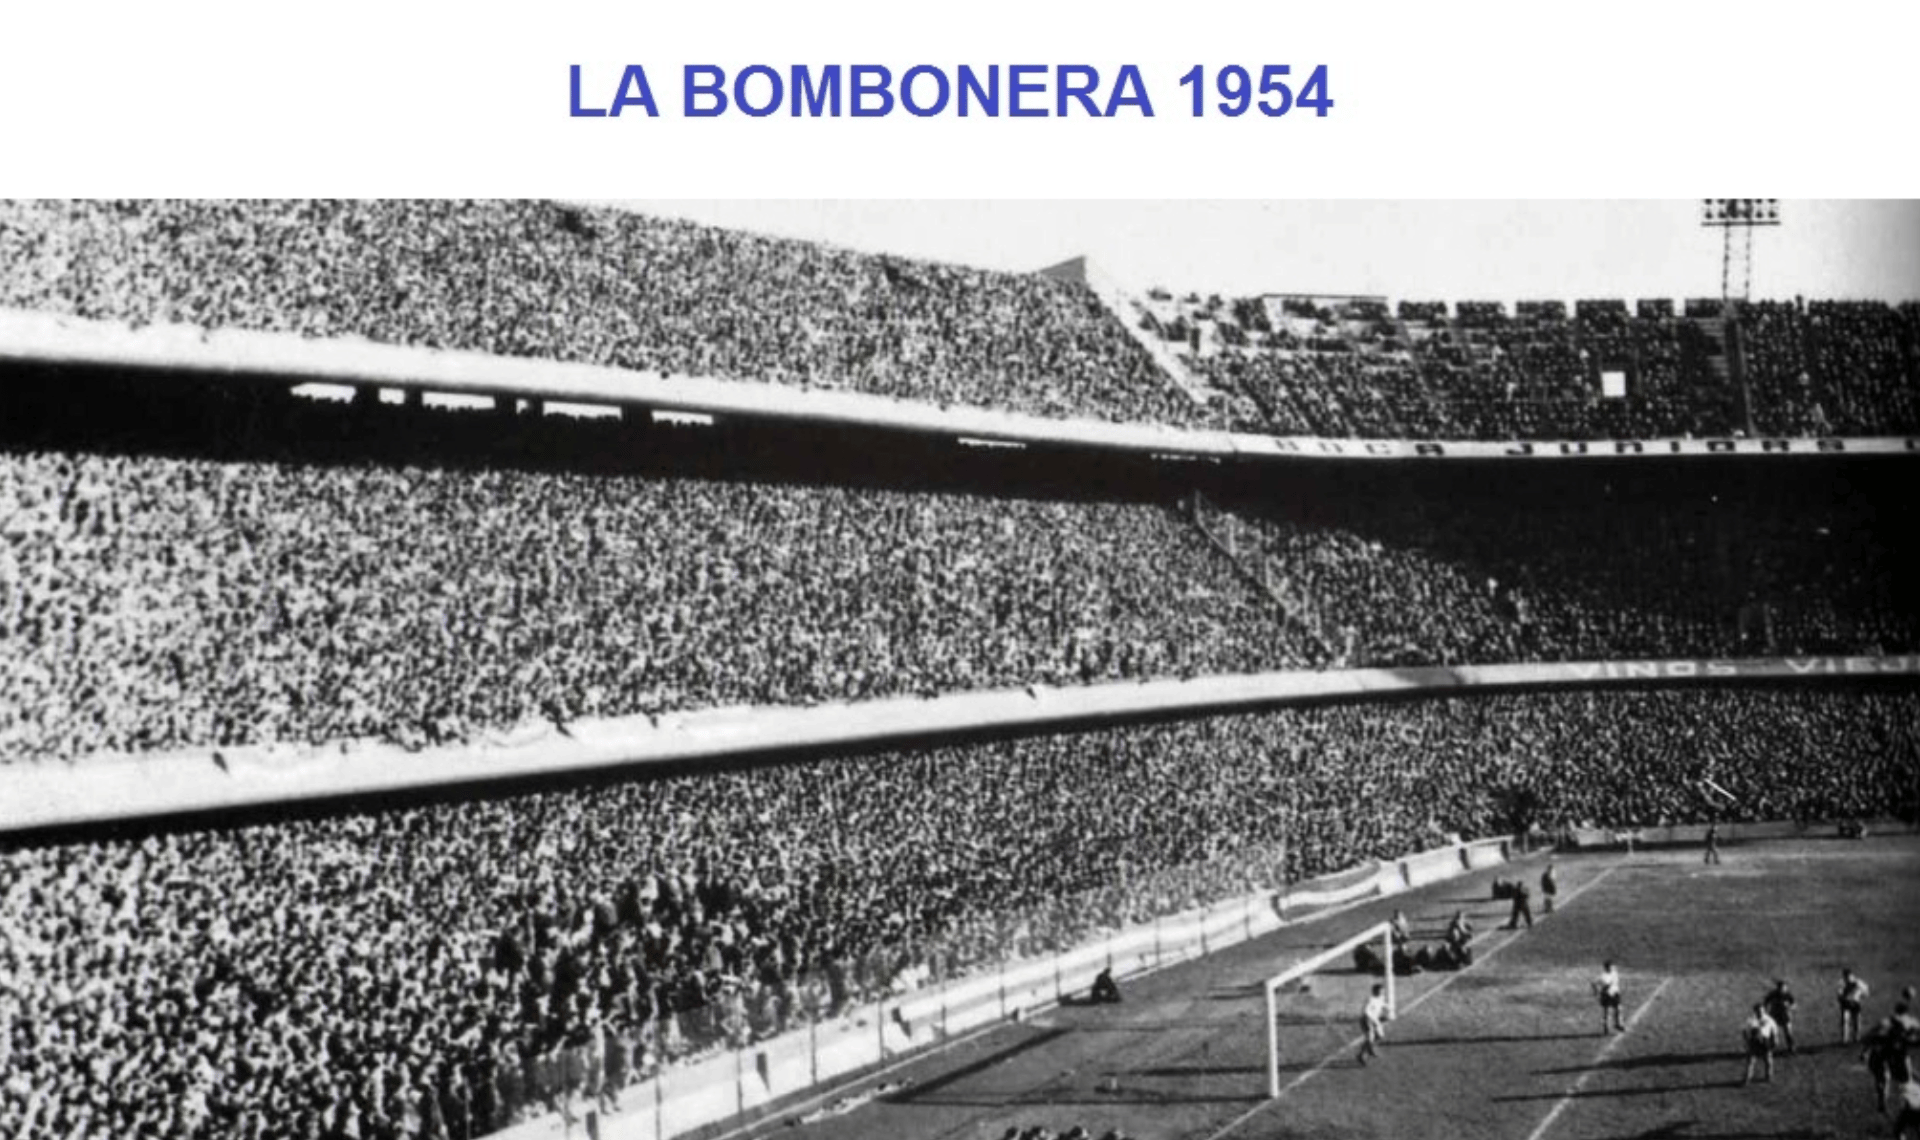 Labombonera 1954